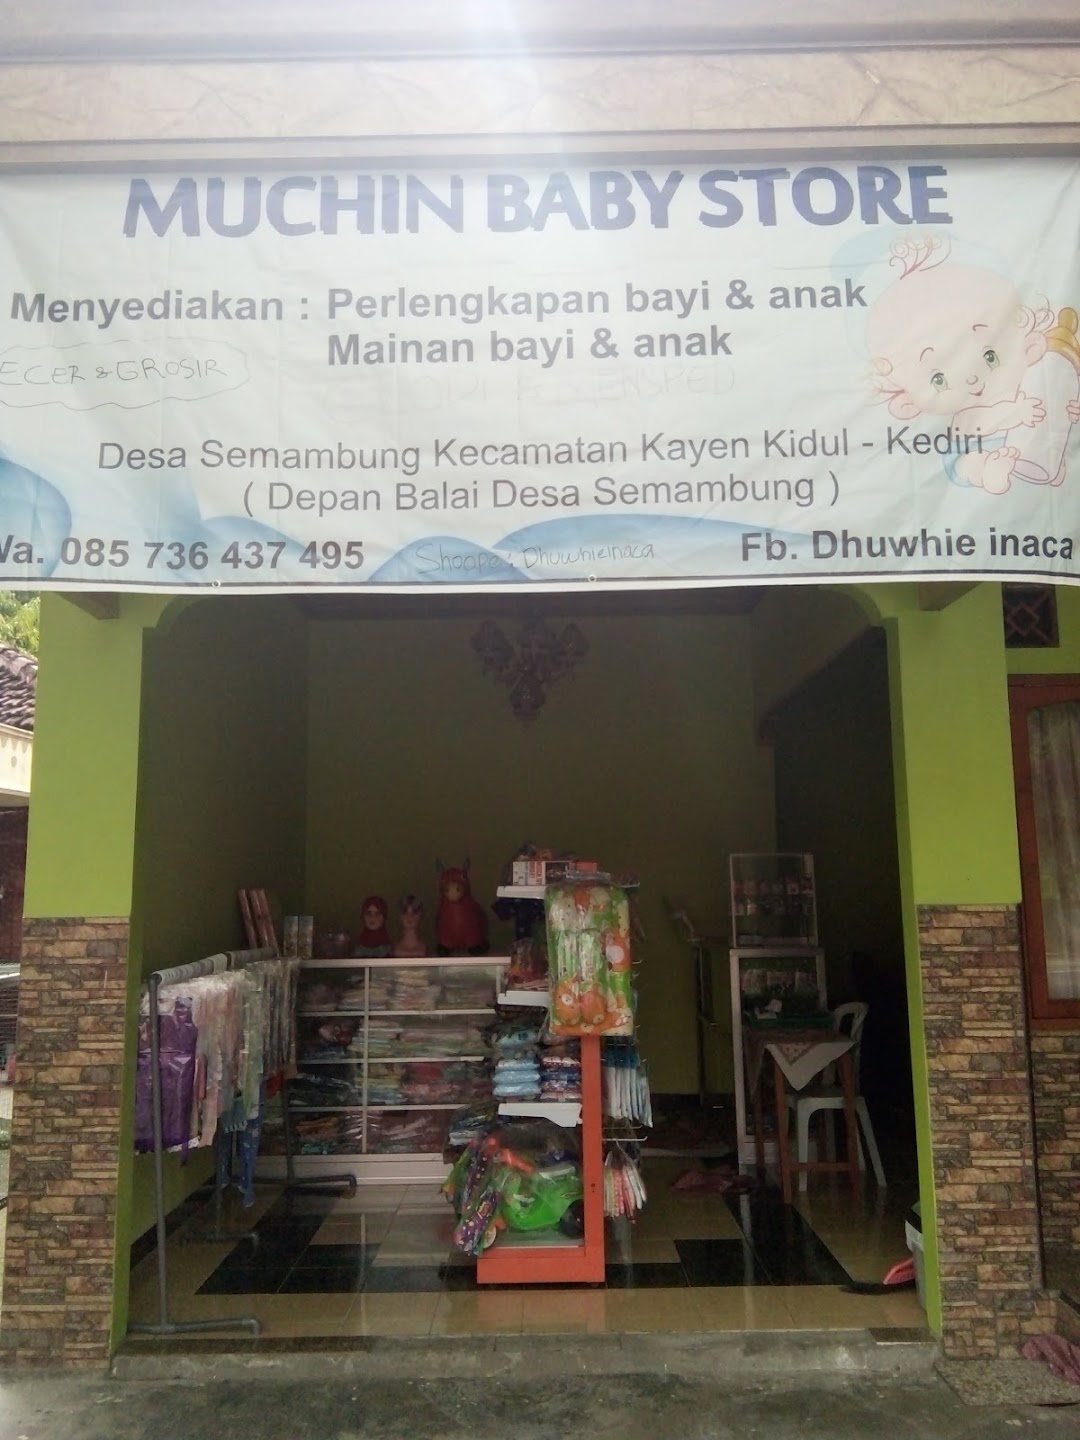 Muchin Baby Store